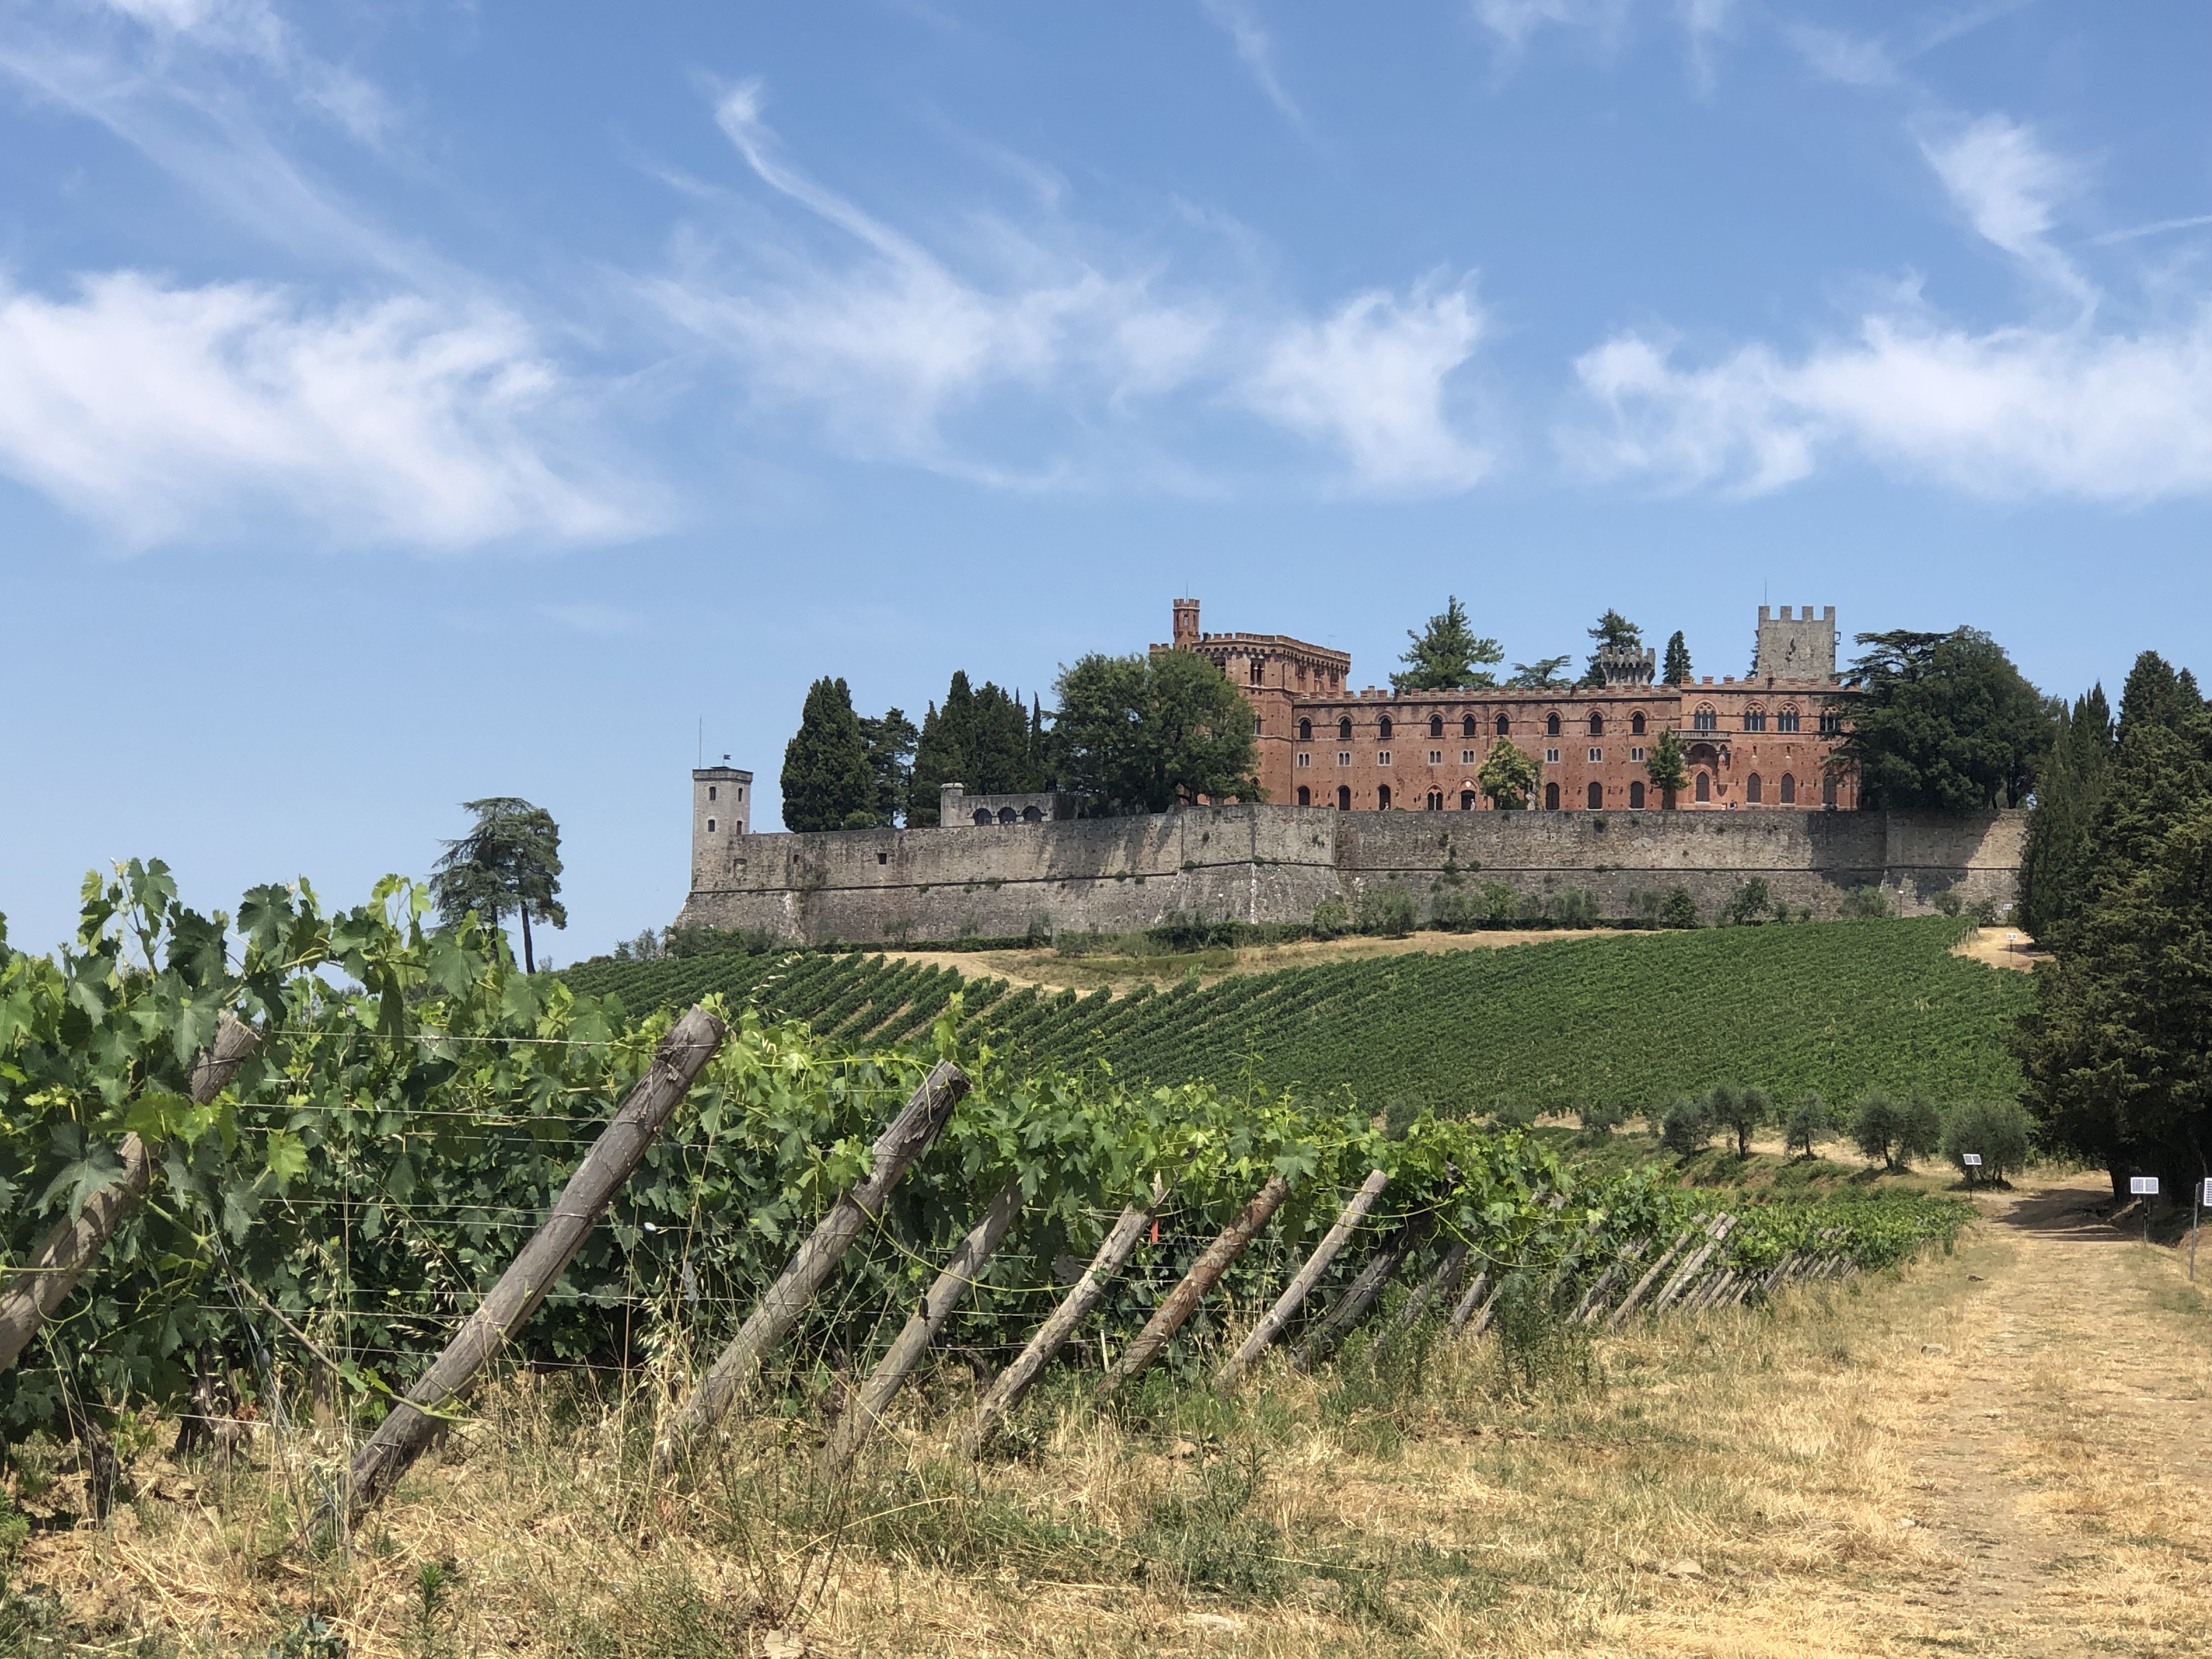 The Castello di Brolio July 2019 :: Borgo Argenina and Elena Nappa